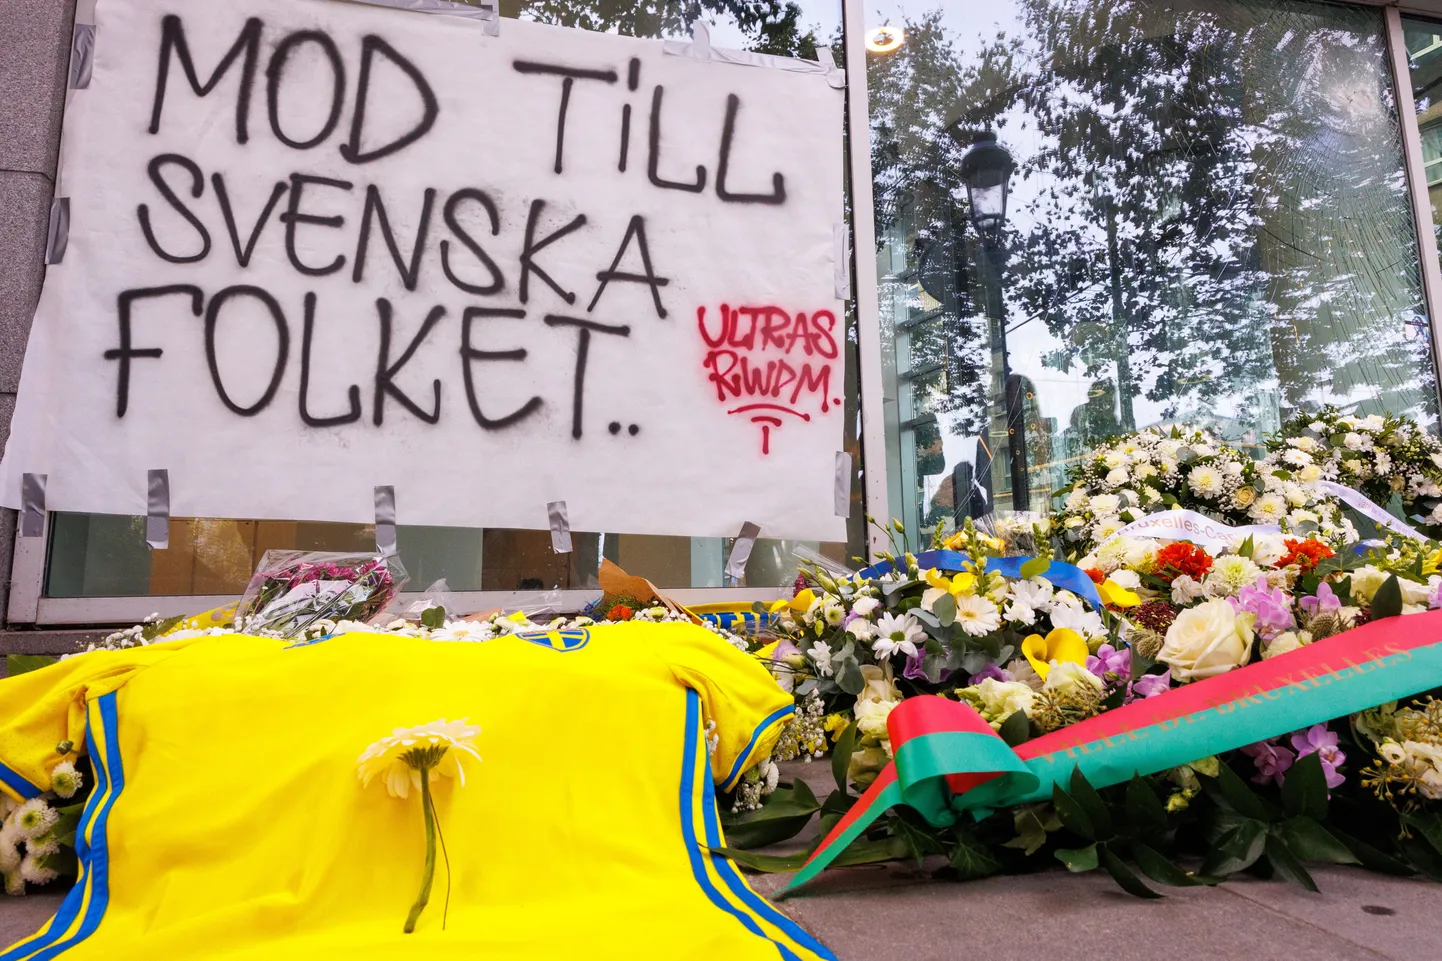 Футболка и цветы сборной Швеции по футболу возложены рядом с плакатом с надписью «Мужество шведского народа» во время поминовения двух шведских футбольных болельщиков, убитых вооруженным преступником в результате теракта в Брюсселе. Мужчина, подозреваемый в убийстве двух граждан Швеции 16 октября, был застрелен полицией во время операции.